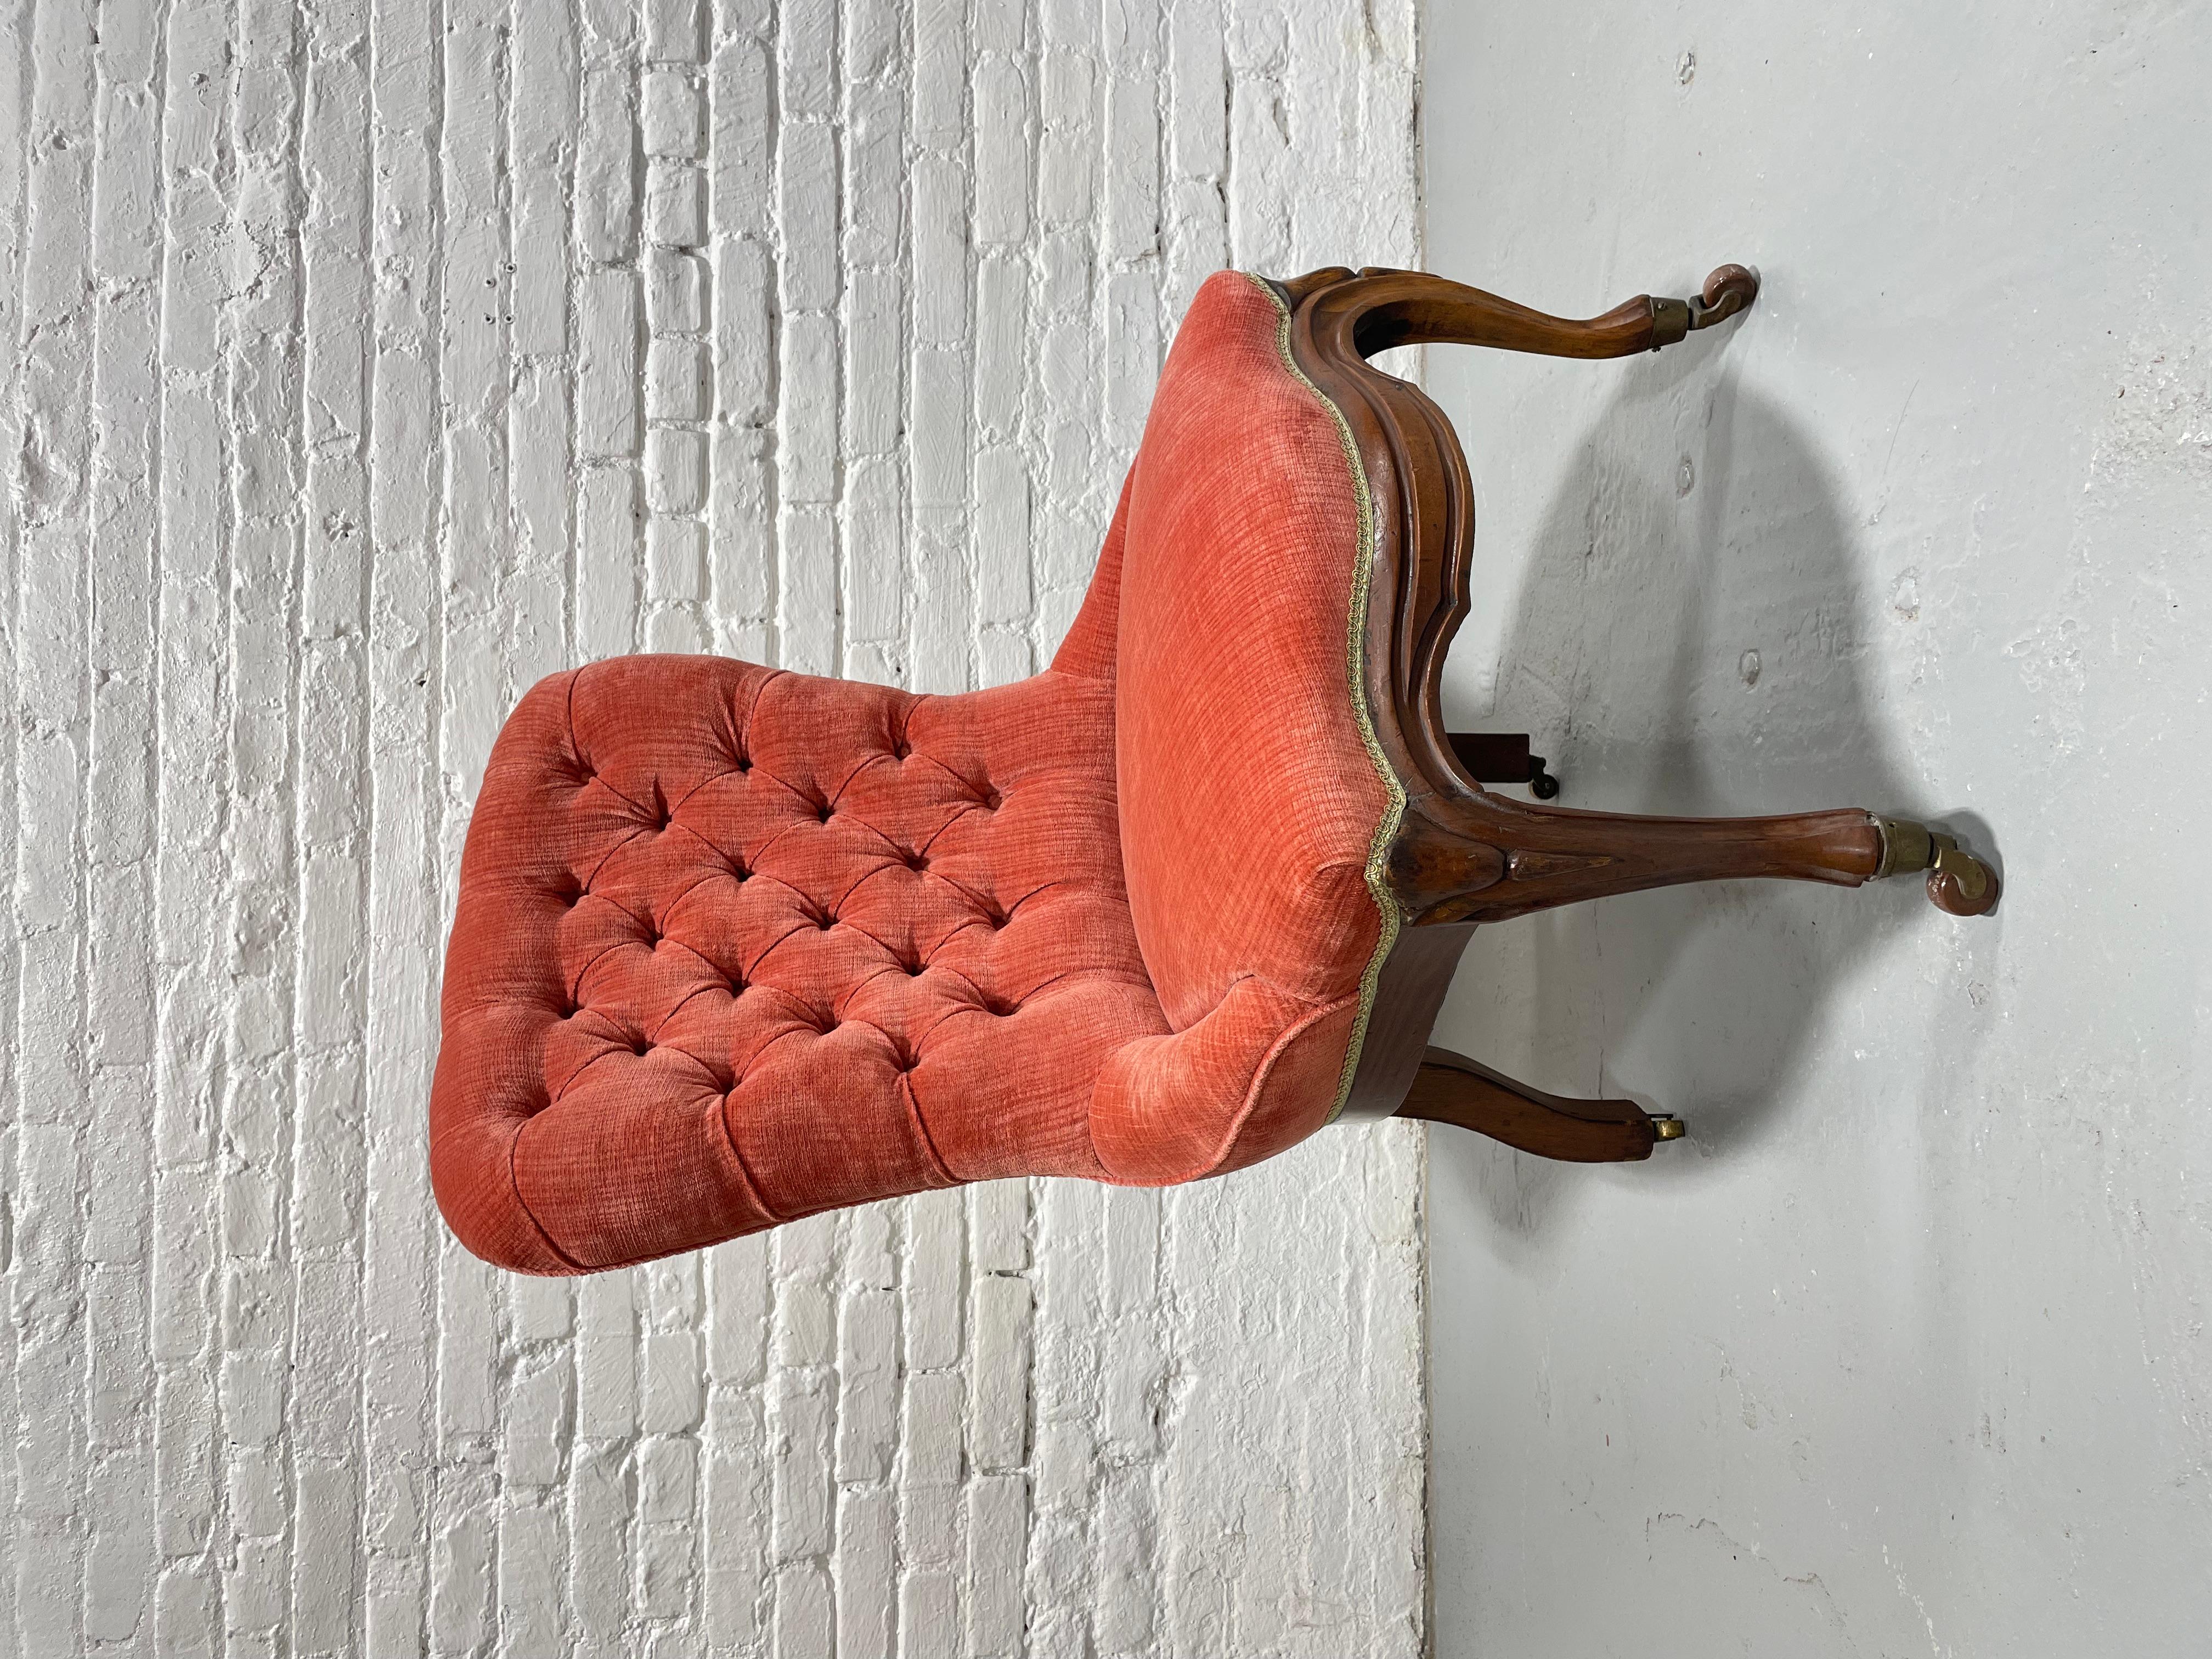 Antike getuftete Mahagoni Französisch Slipper Side Chair. Bemerkenswerter Zustand und perfekt getuftet. Die geschnitzten Details sind wunderschön und der Stuhl steht auf kleinen Rollen. Der Sitz wurde irgendwann in einem schönen rosa weichen Samt